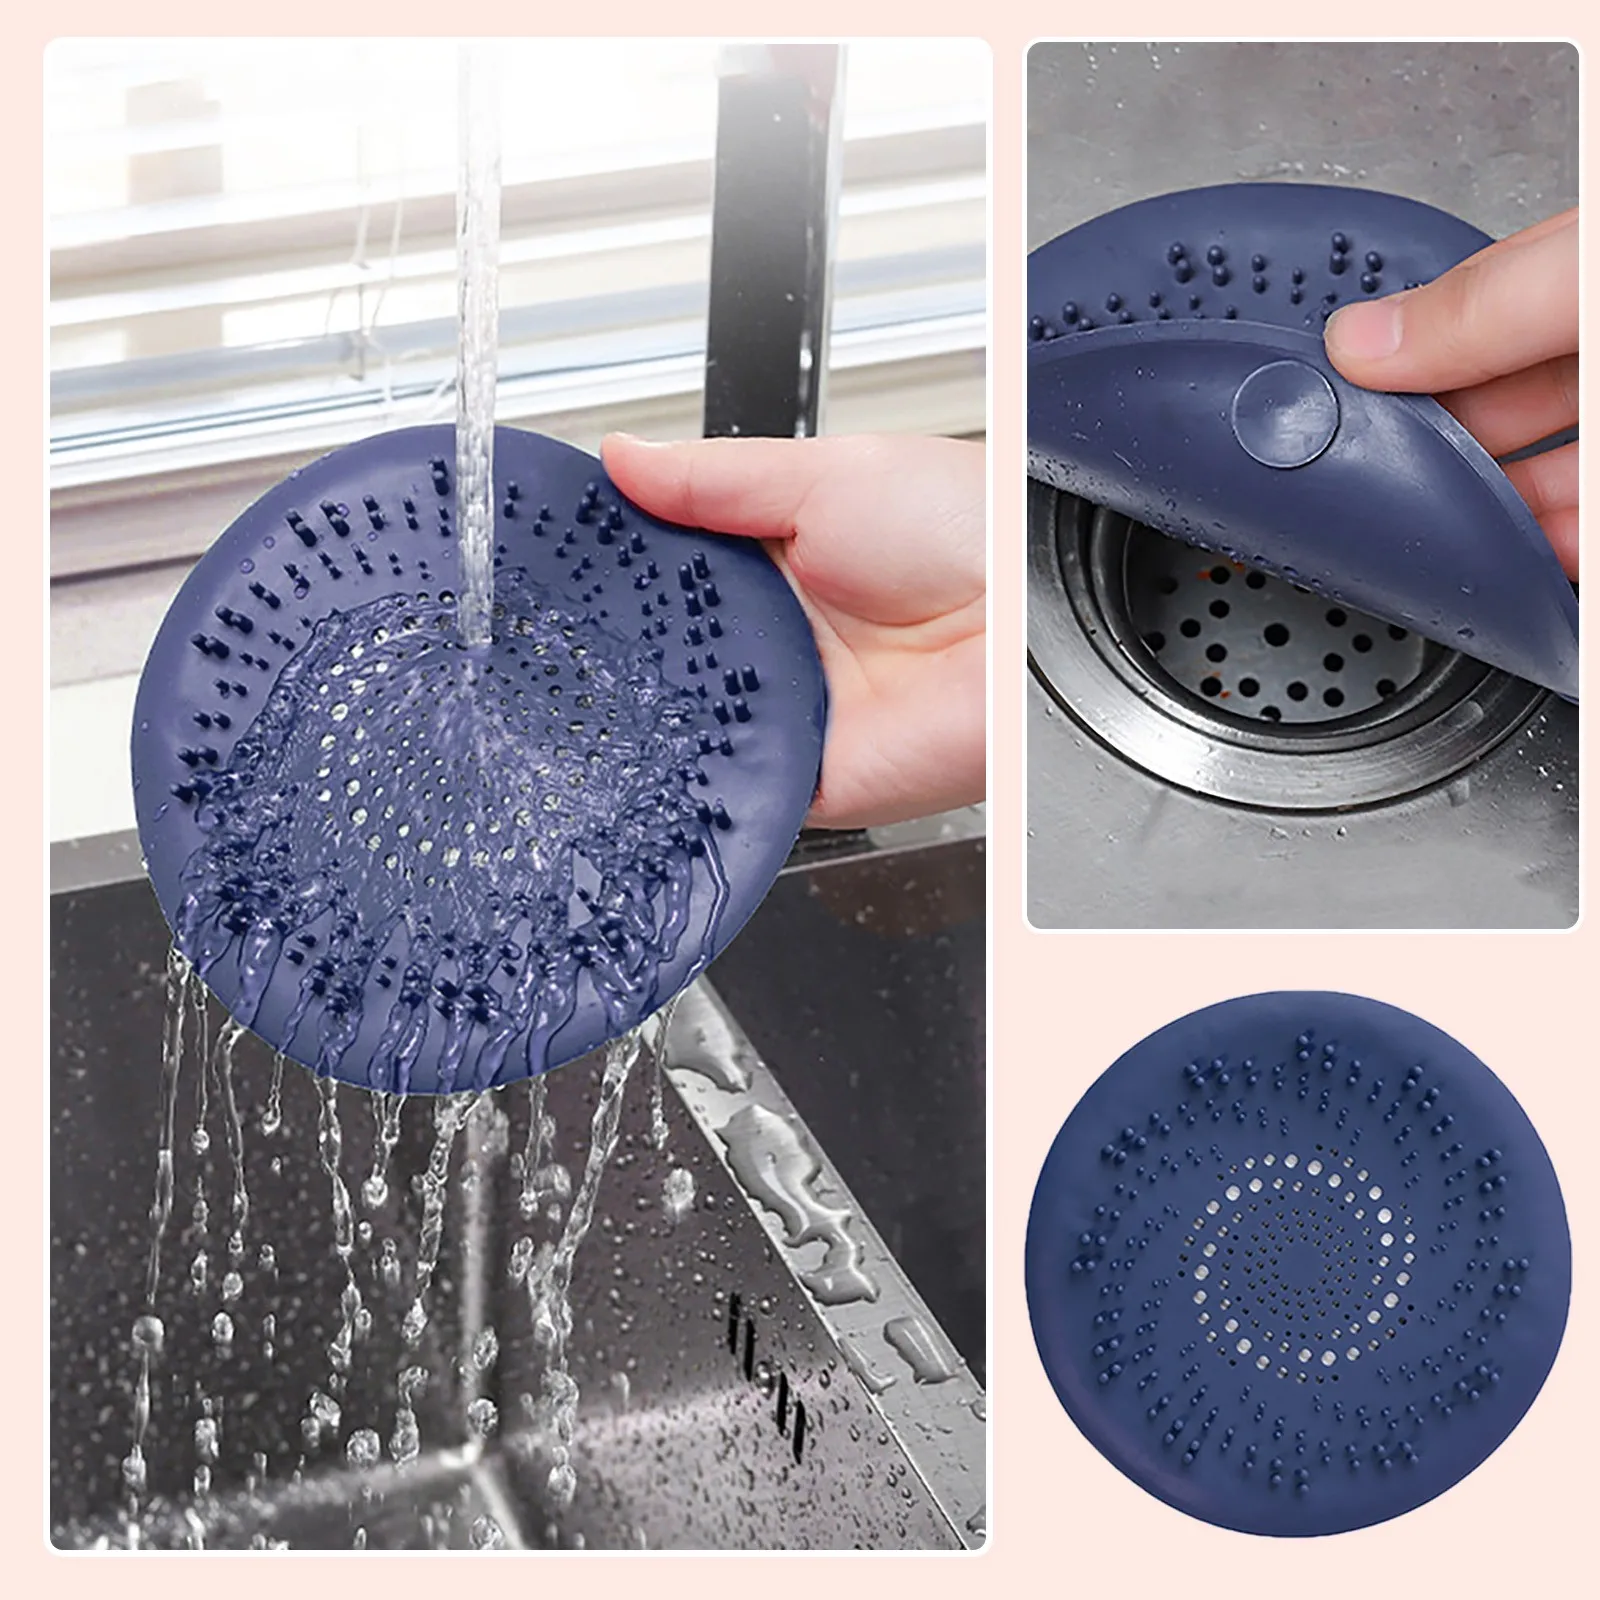 https://ae01.alicdn.com/kf/S697bcc5caa99433f9b15d77a8fdf537cI/Round-Shower-Hair-Catcher-Soft-Mesh-Kitchen-Sink-Filter-Strainer-For-Showers-Bathtubs-Drain-Hair-Stopper.jpg